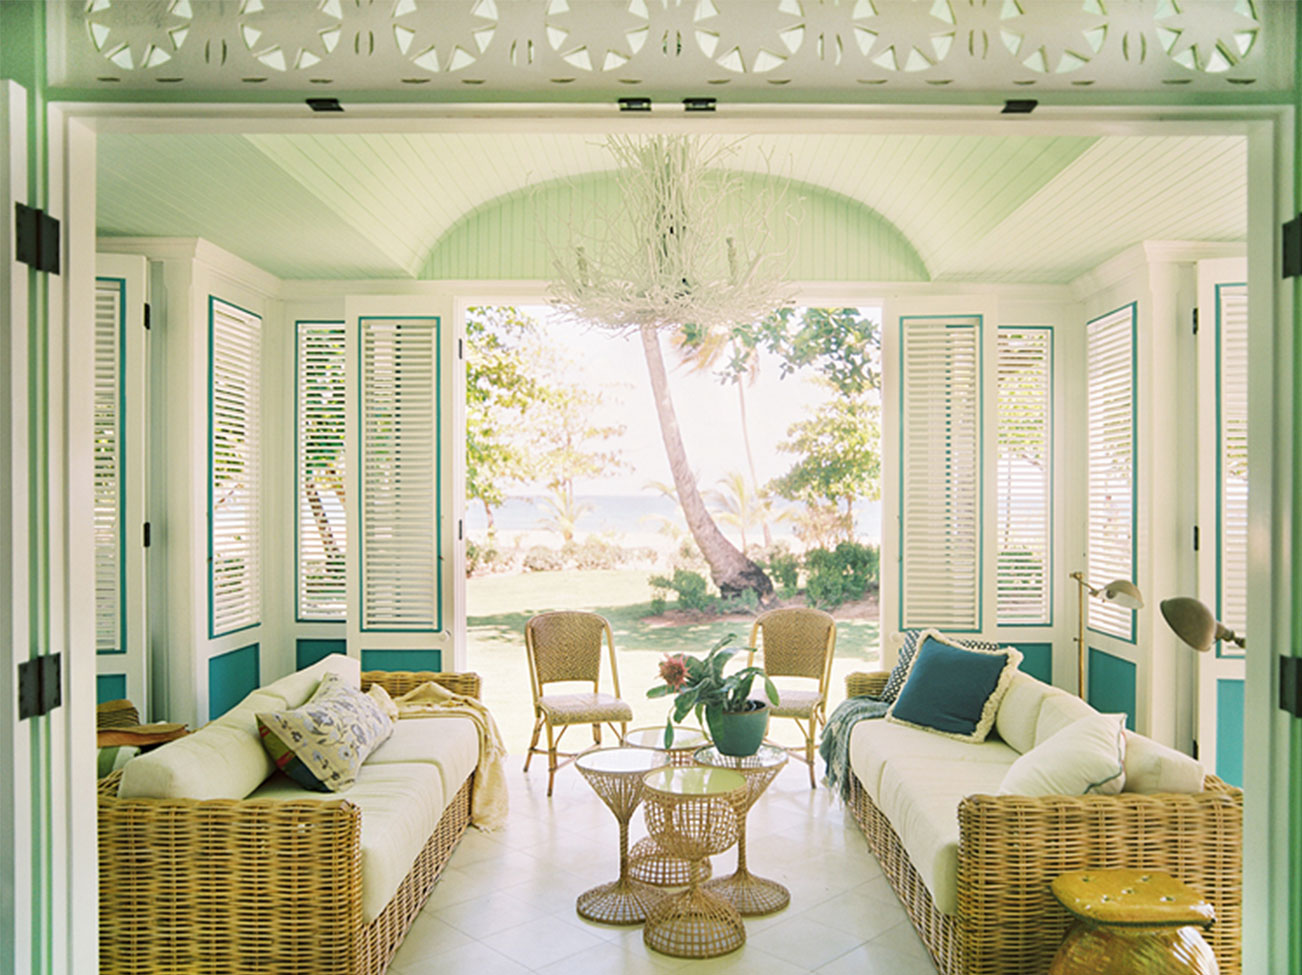 Véranda en forme d’îlot dans des teintes de vert et de blanc crème avec des volets à panneaux articulés, deux sofas en osier tressé et des chaises assorties.